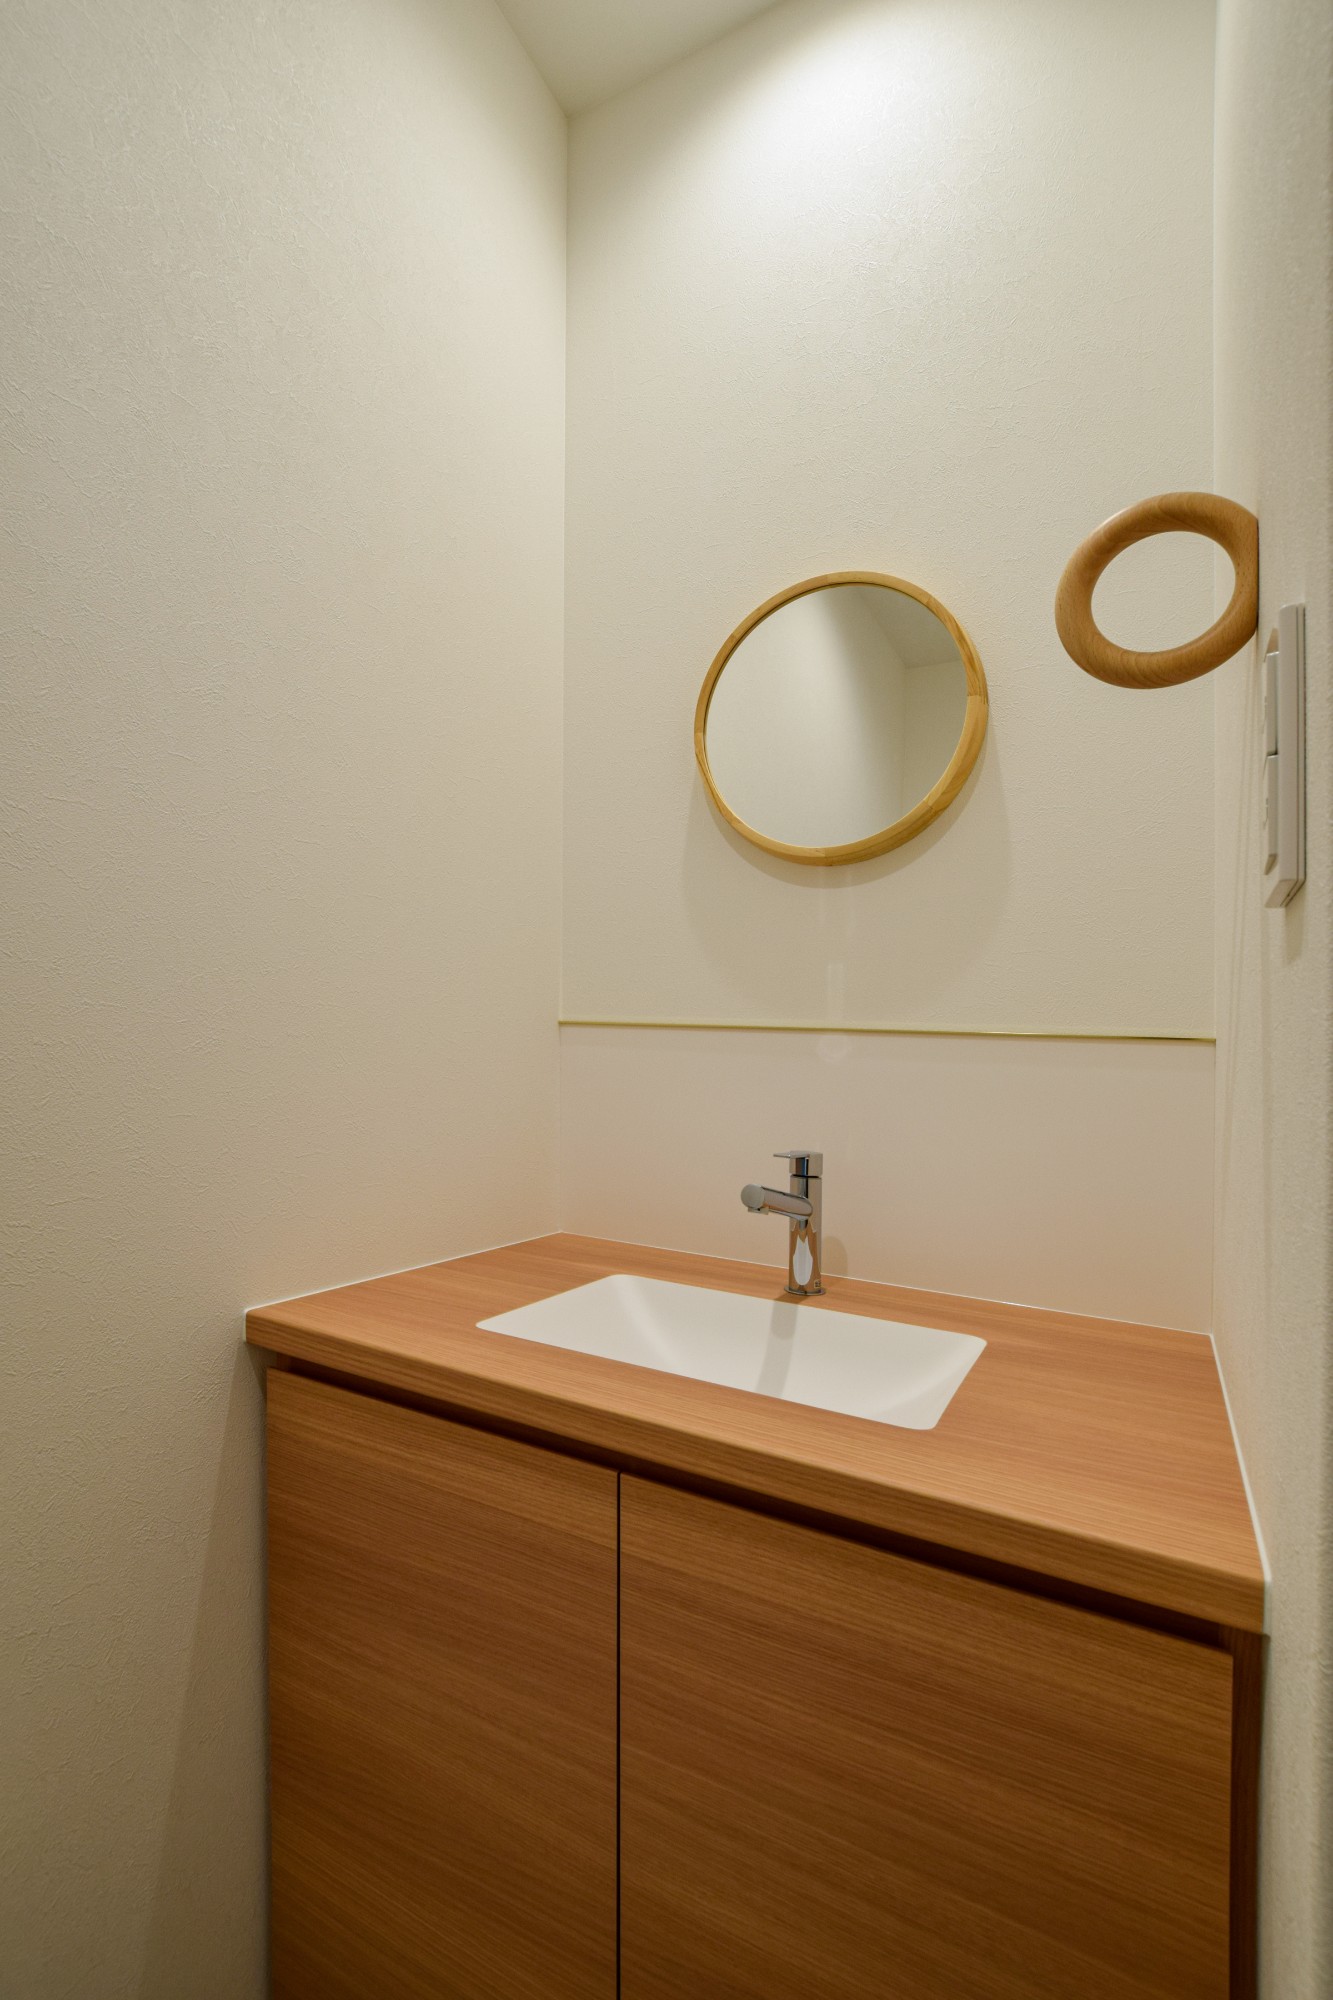 1階のトイレの手洗いカウンターは、ボールと一体成型で造作した。ボールが埋め込まれているのでお掃除が楽になるように配慮した